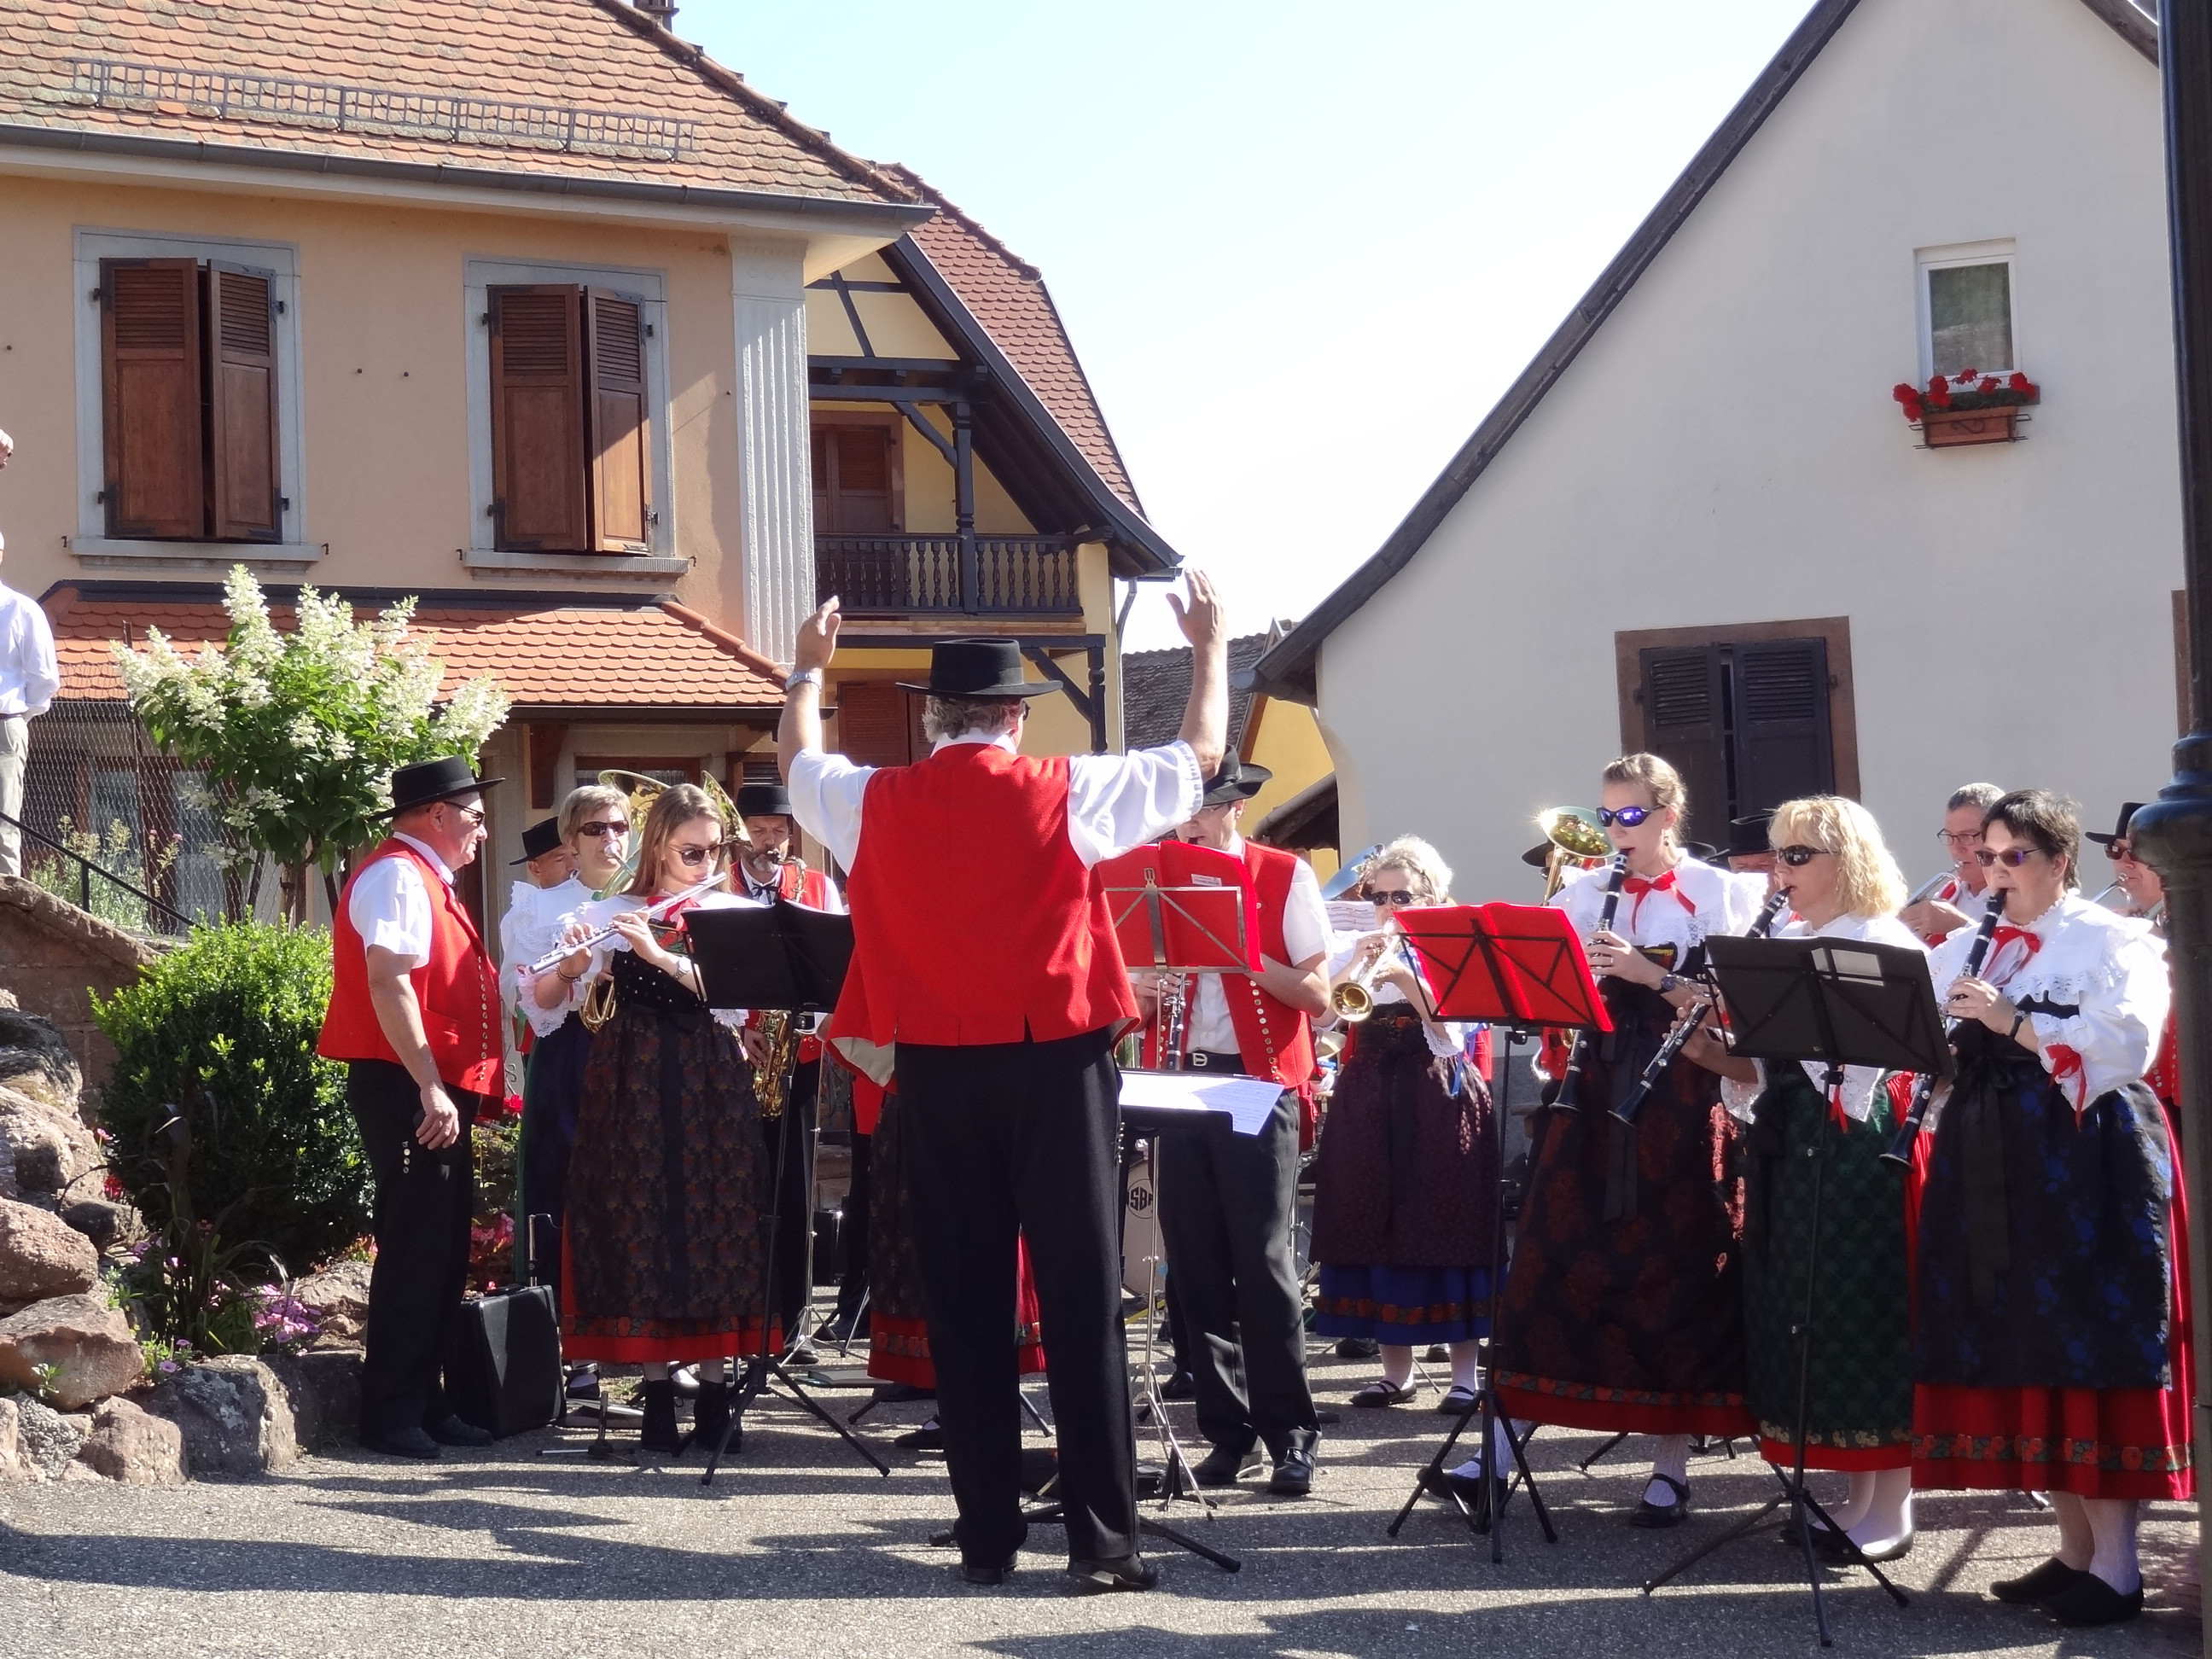                                                     Zur Begrüßung spielte der Musikverein Ottrott auf dem Kirchplatz.                                    